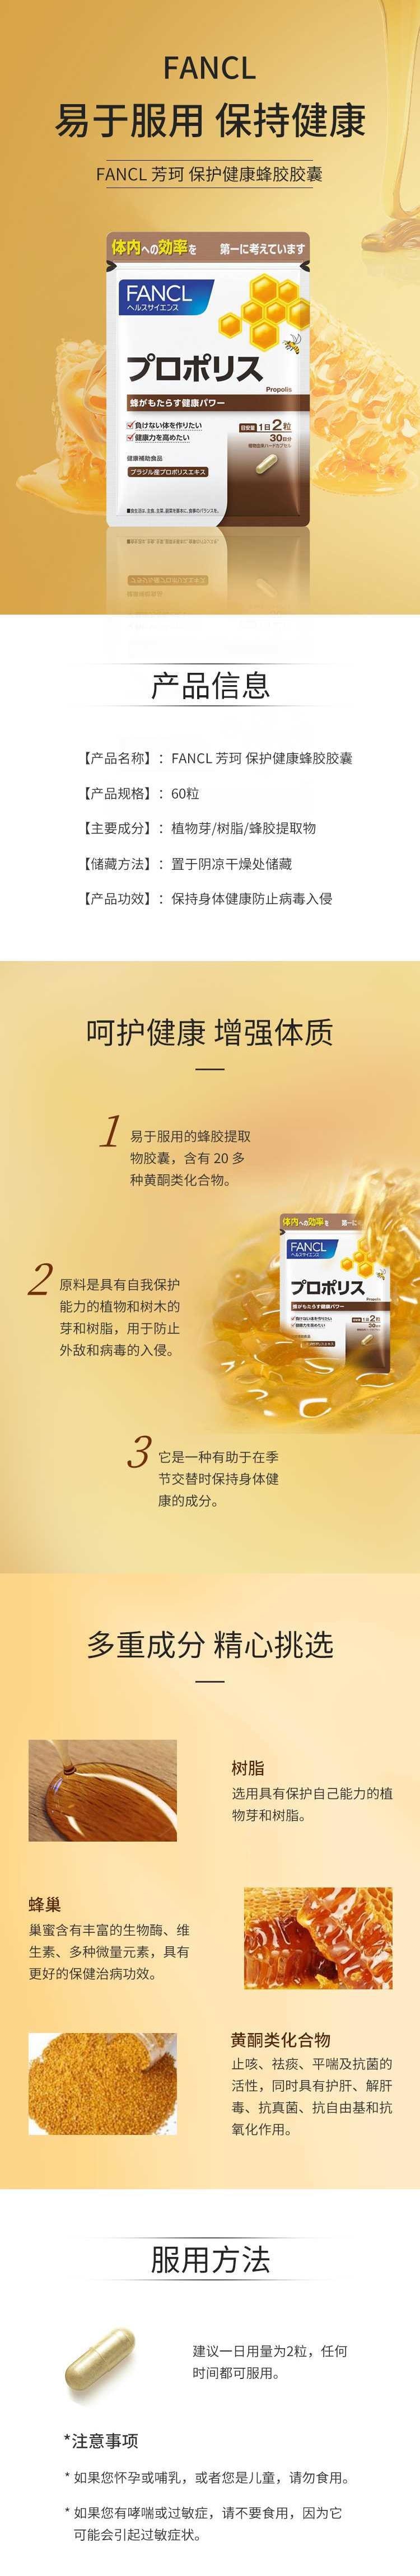 【日本直效郵件】FANCL芳珂 膳食營養補充食品蜂膠膠囊 60粒/30天量